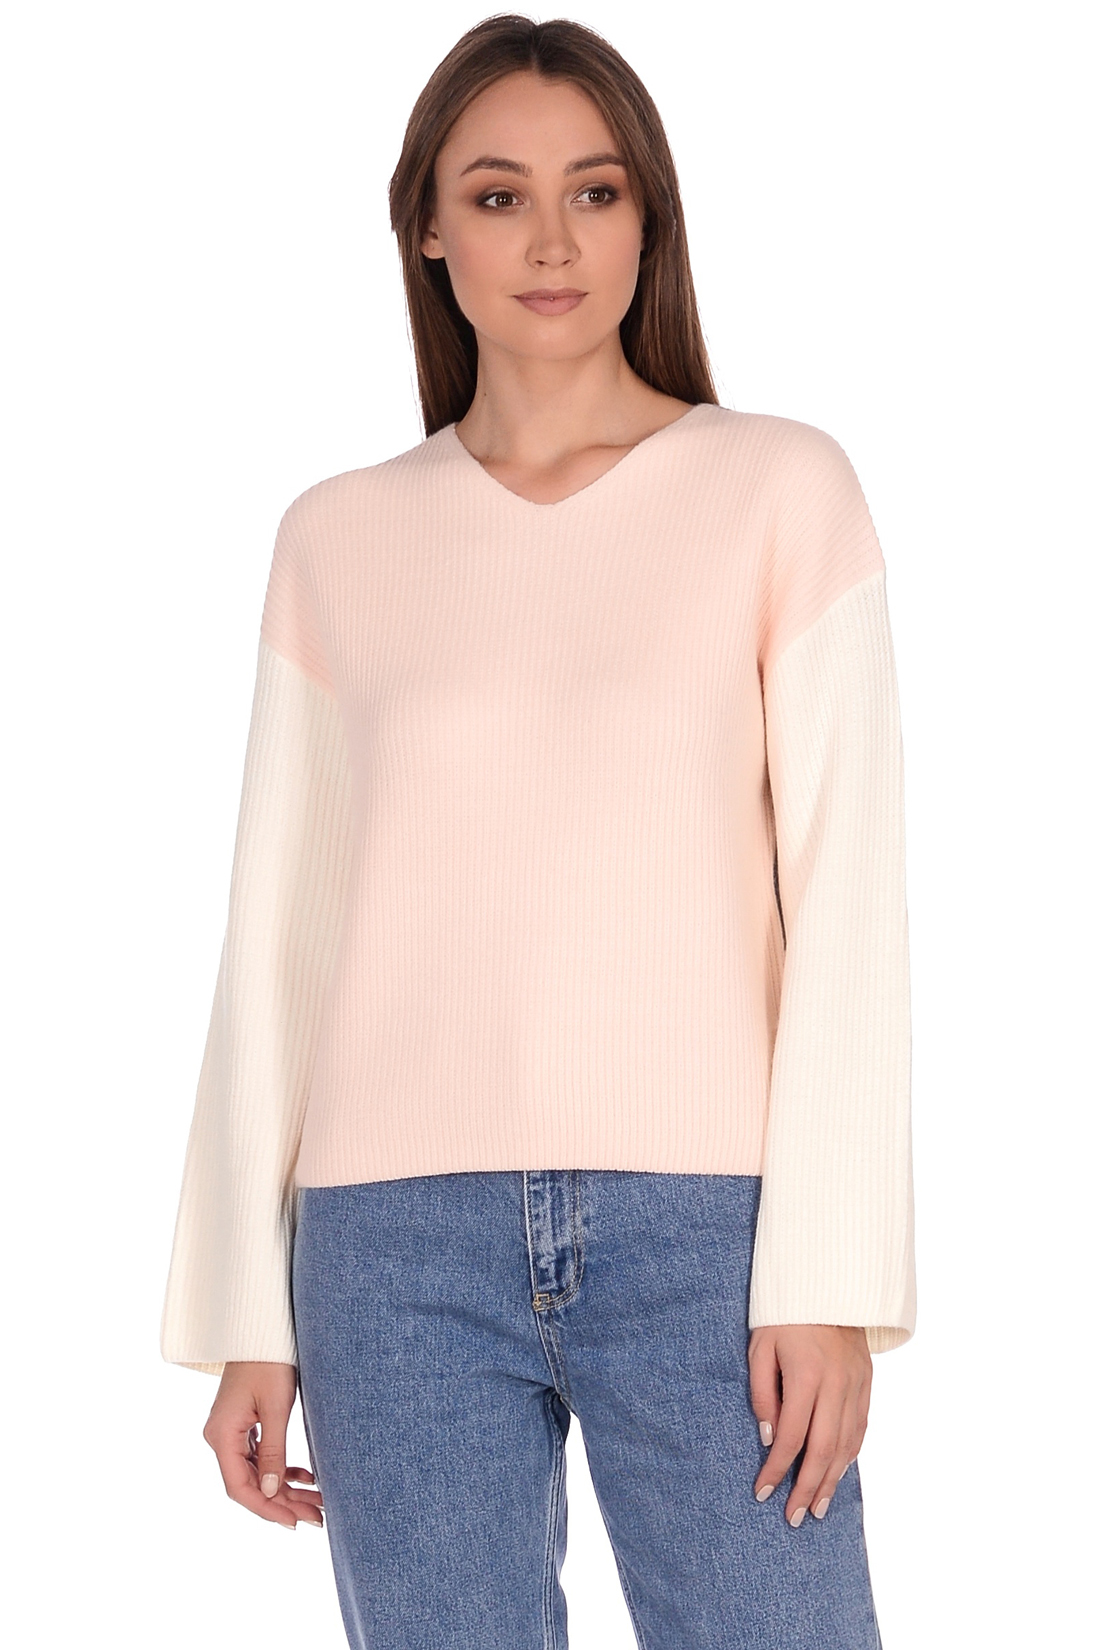 Укороченный пуловер в стиле колор-блок (арт. baon B139565), размер L, цвет белый Укороченный пуловер в стиле колор-блок (арт. baon B139565) - фото 4